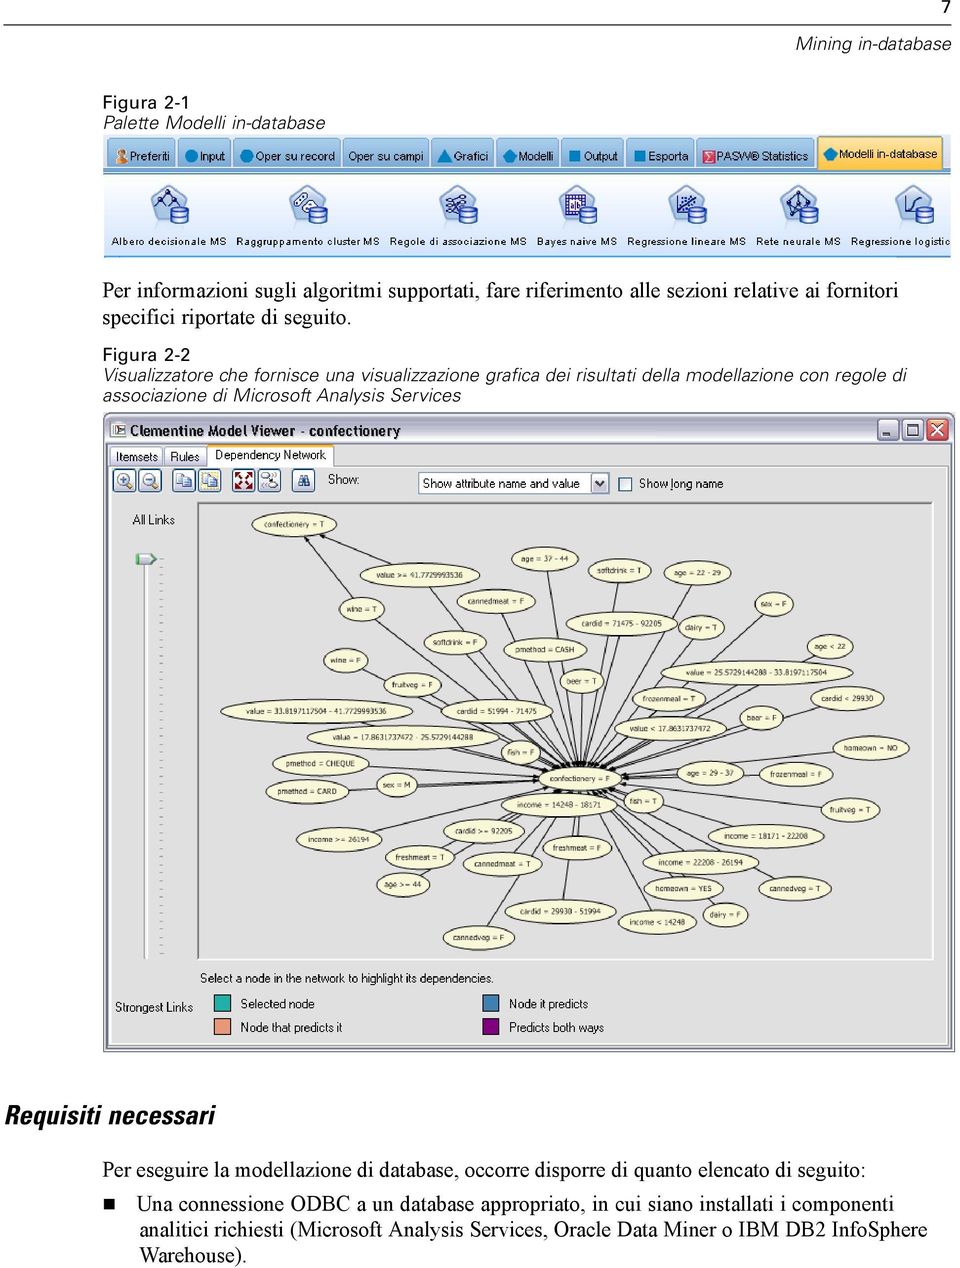 Figura 2-2 Visualizzatore che fornisce una visualizzazione grafica dei risultati della modellazione con regole di associazione di Microsoft Analysis Services